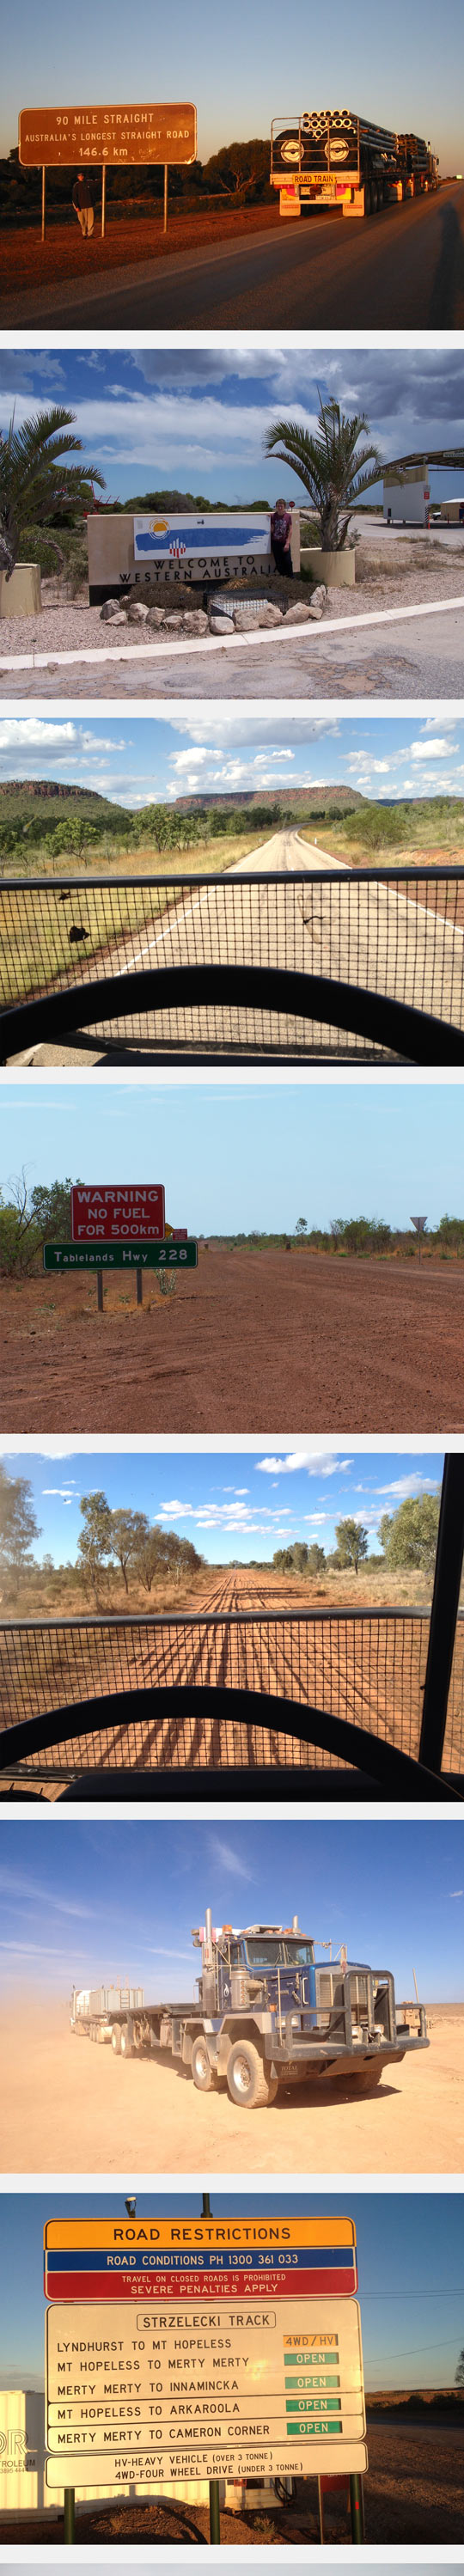 funny-signs-trucks-long-signs-Australia-desert